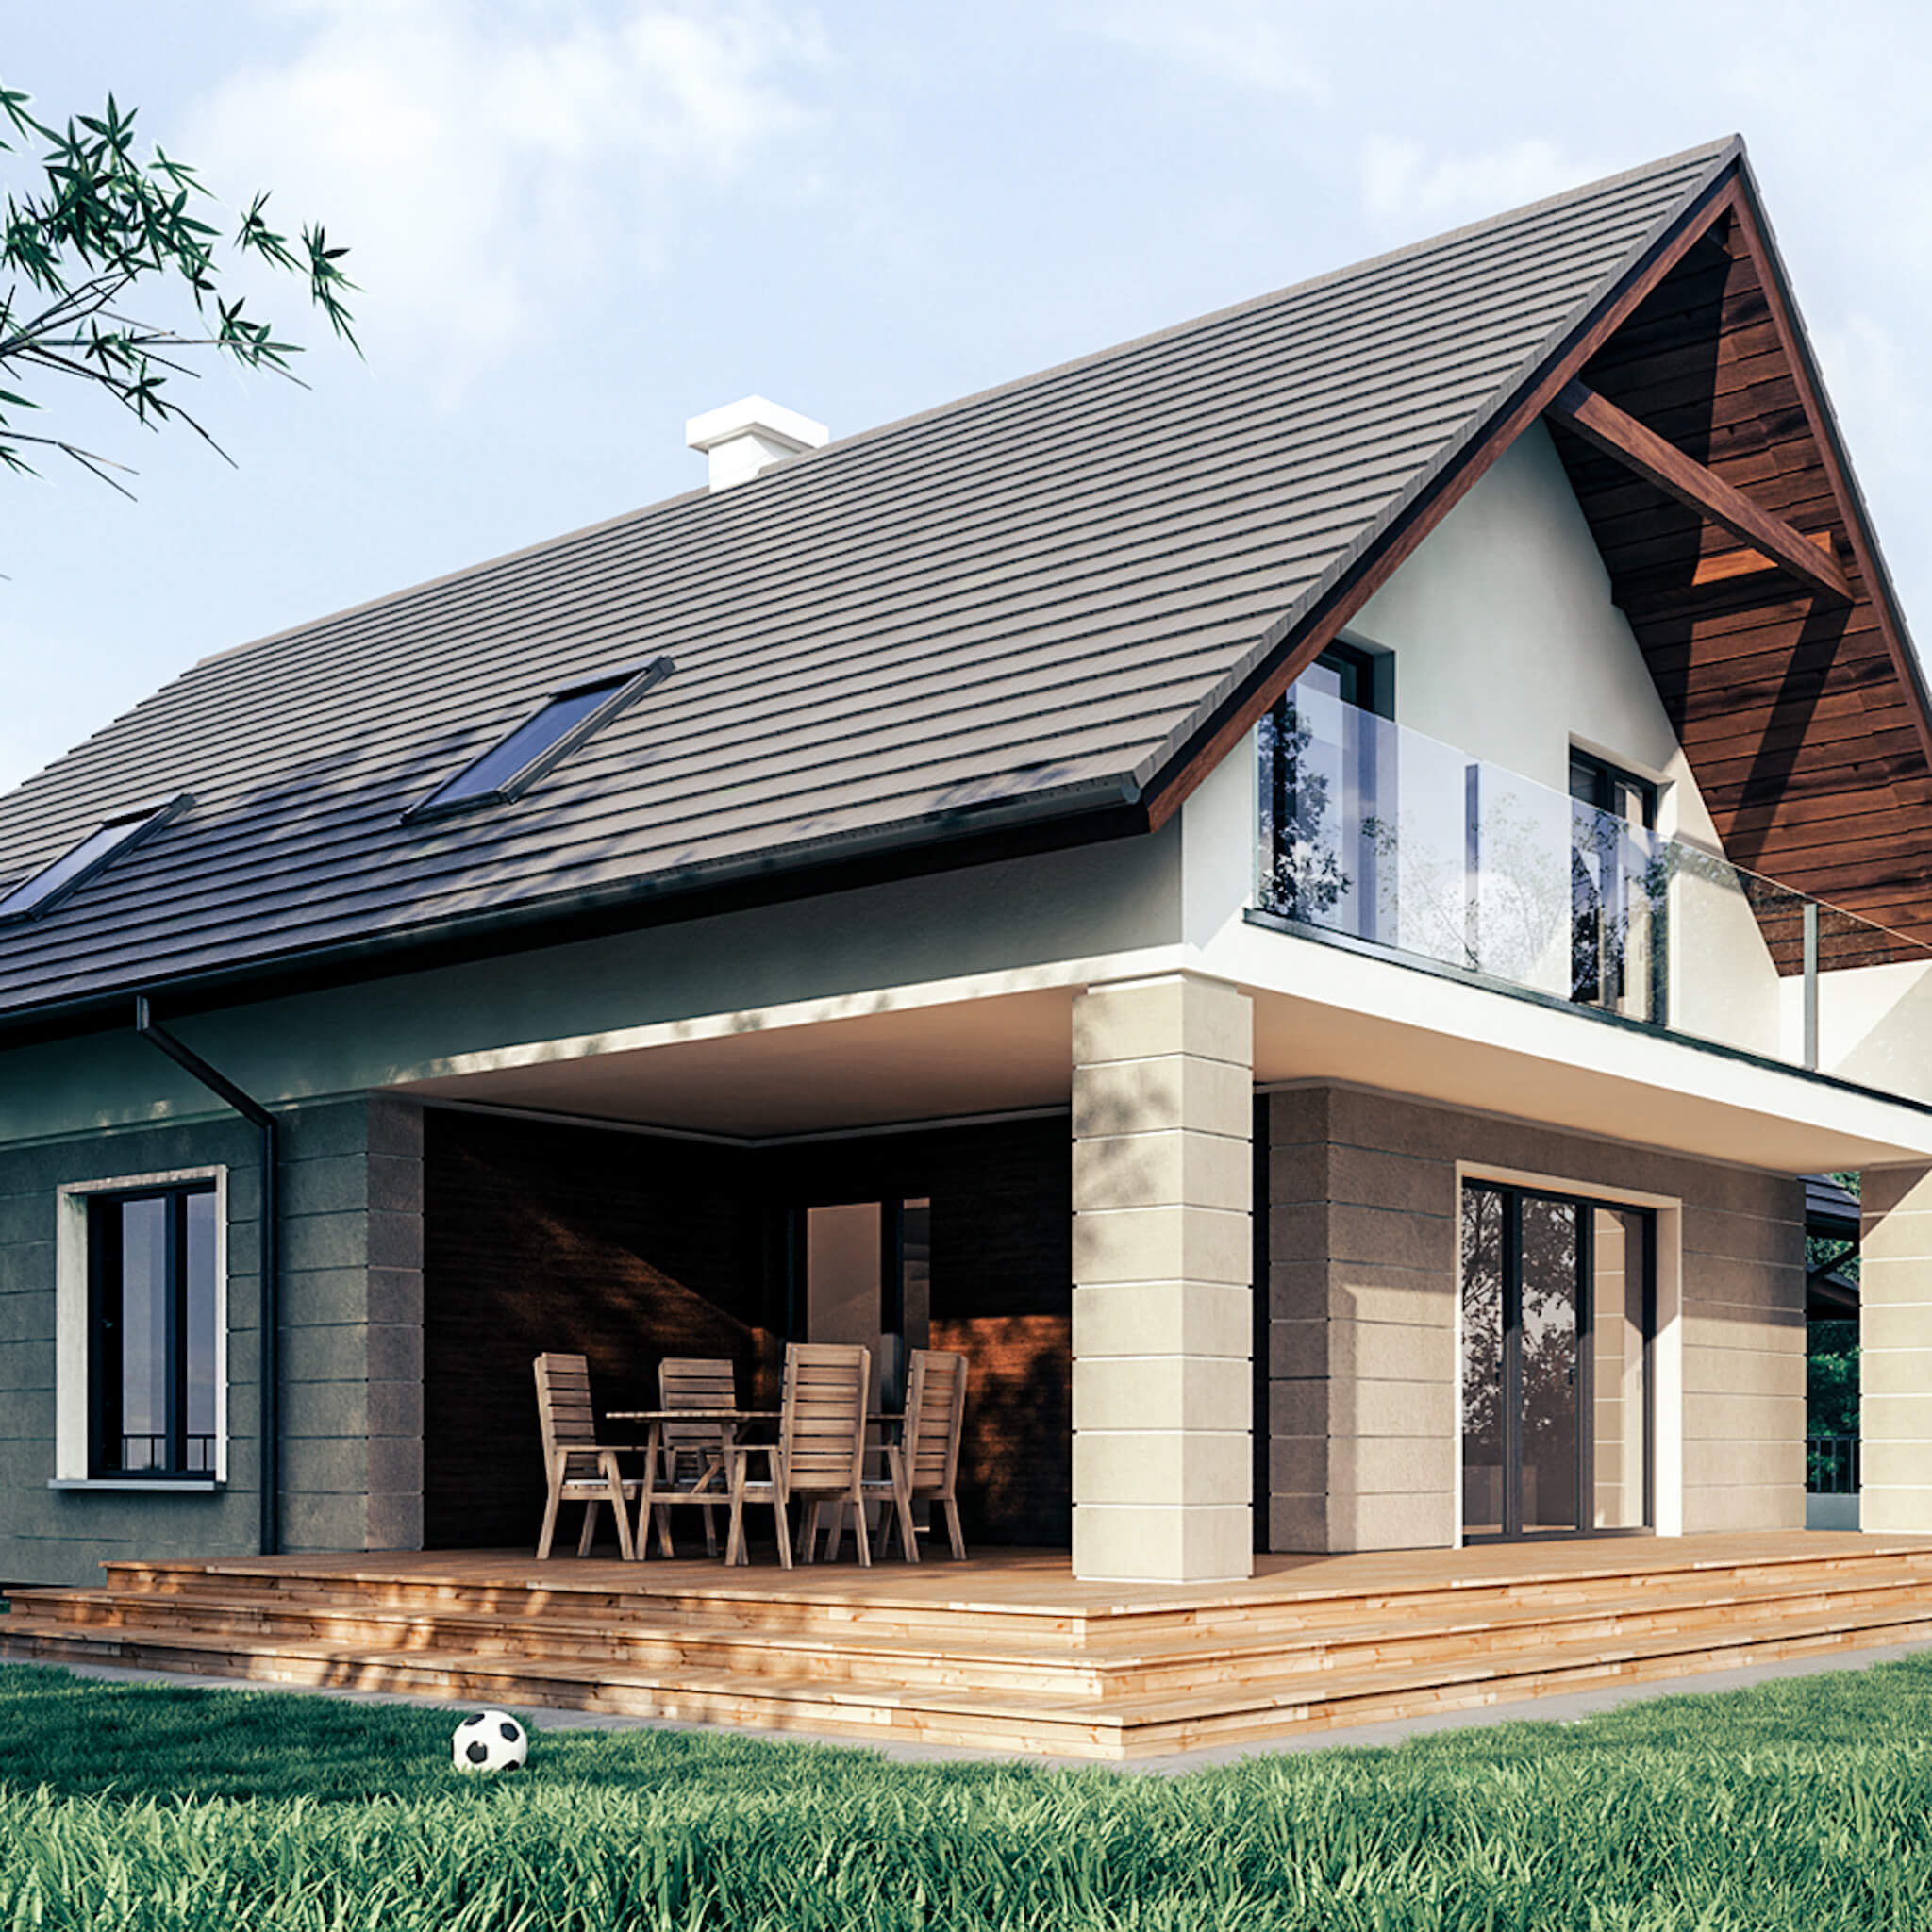 Projekt domu jednorodzinnego, minimalistyczny, w charakterze nowoczesnej stodoły.